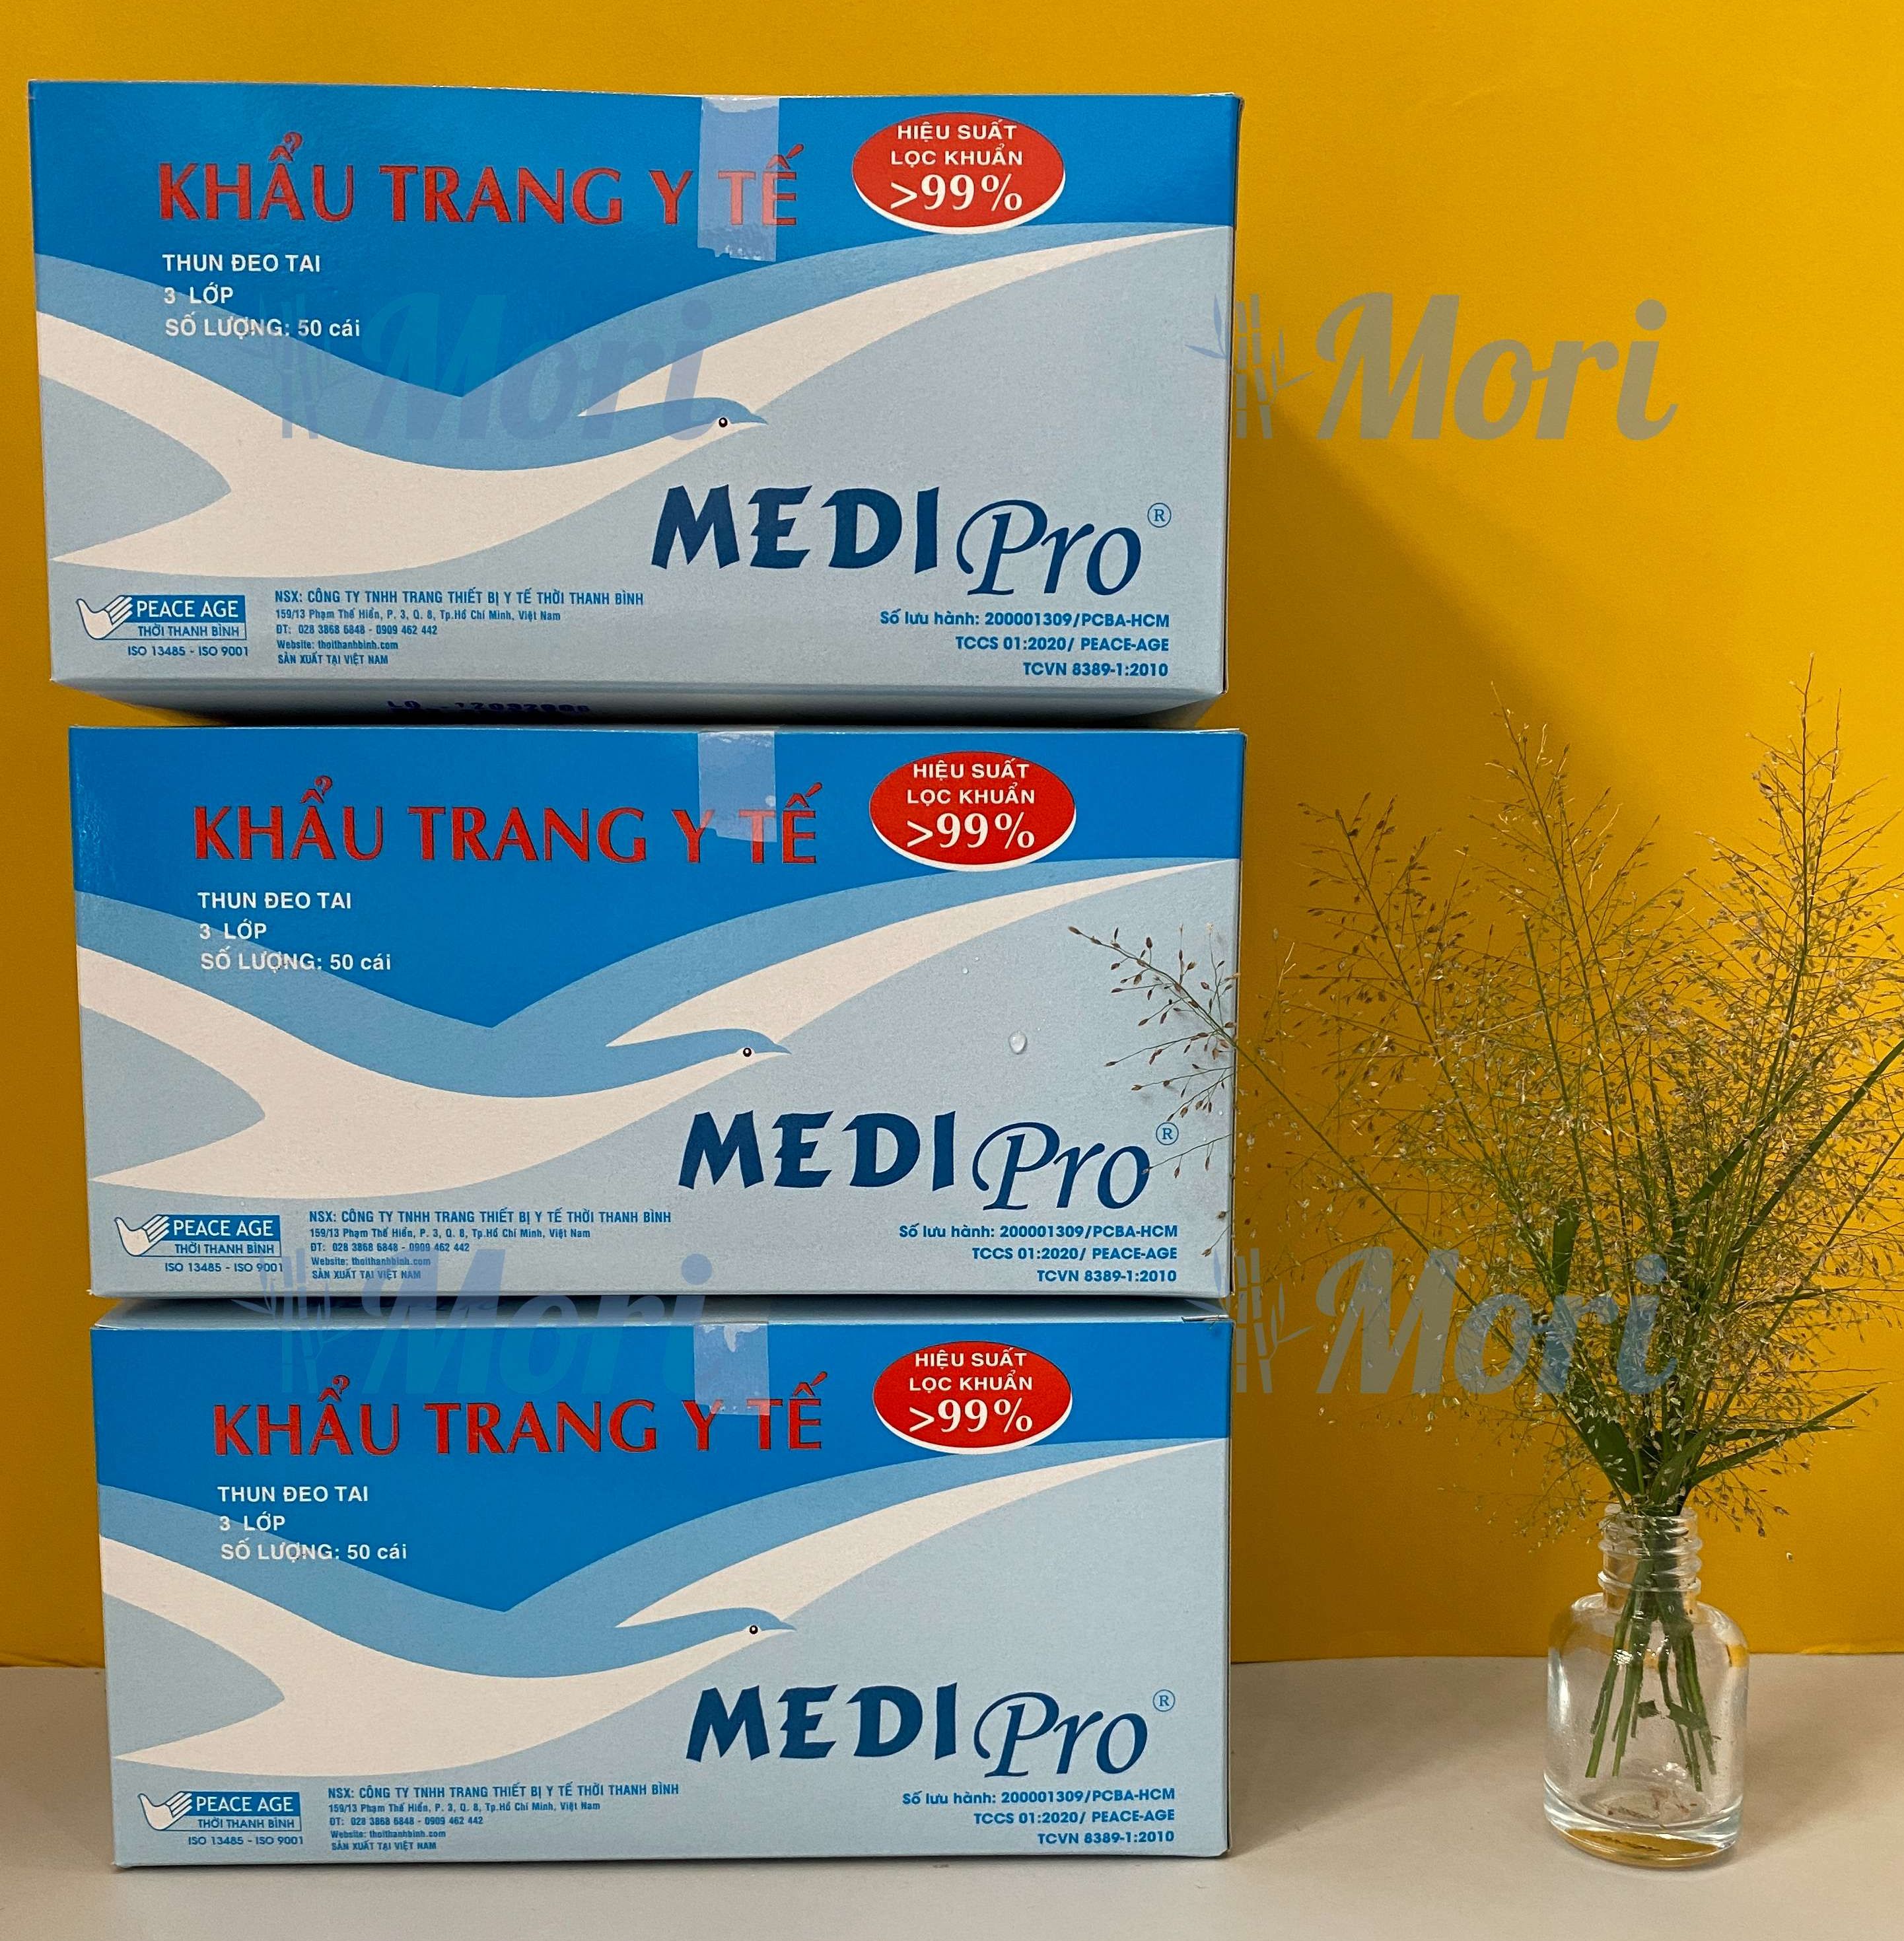 [CHÍNH HÃNG] Khẩu trang y tế cao cấp Medi Pro 3 lớp - cty Thời Thanh Bình (hộp 50 cái)